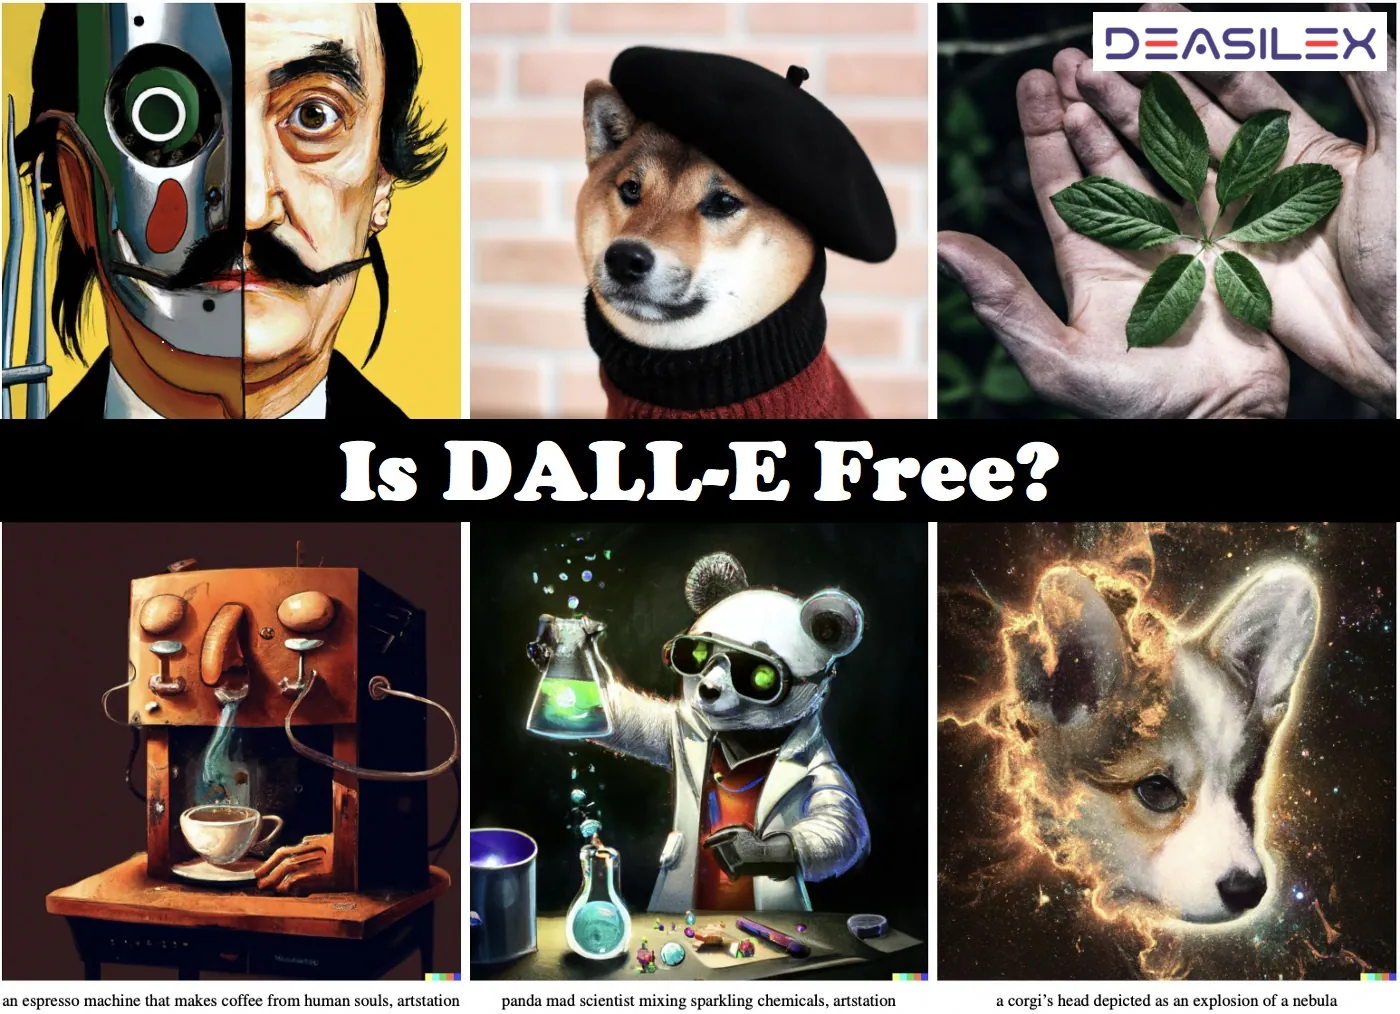 Is DALL-E Free?